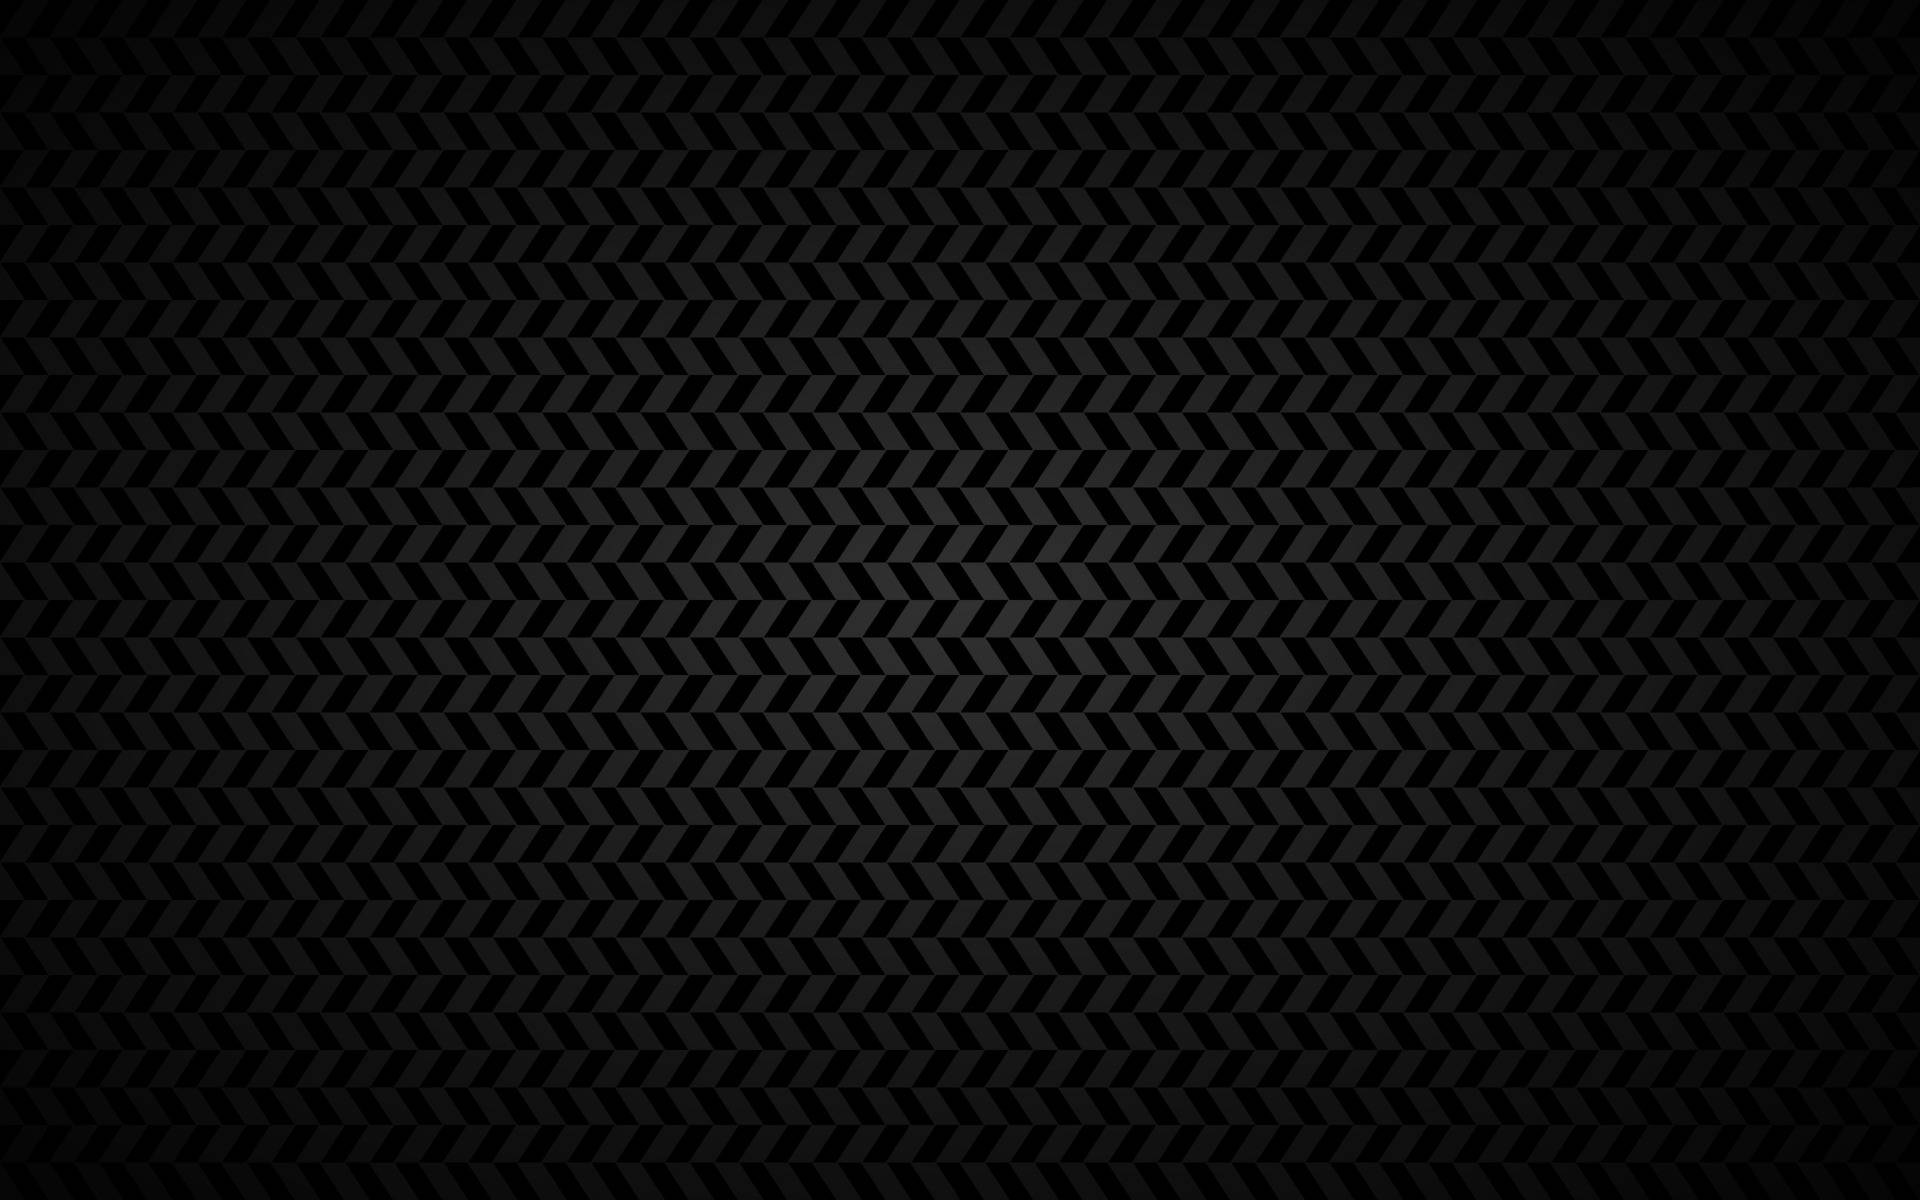 Fibrade Carbono Negra En 4k. Fondo de pantalla